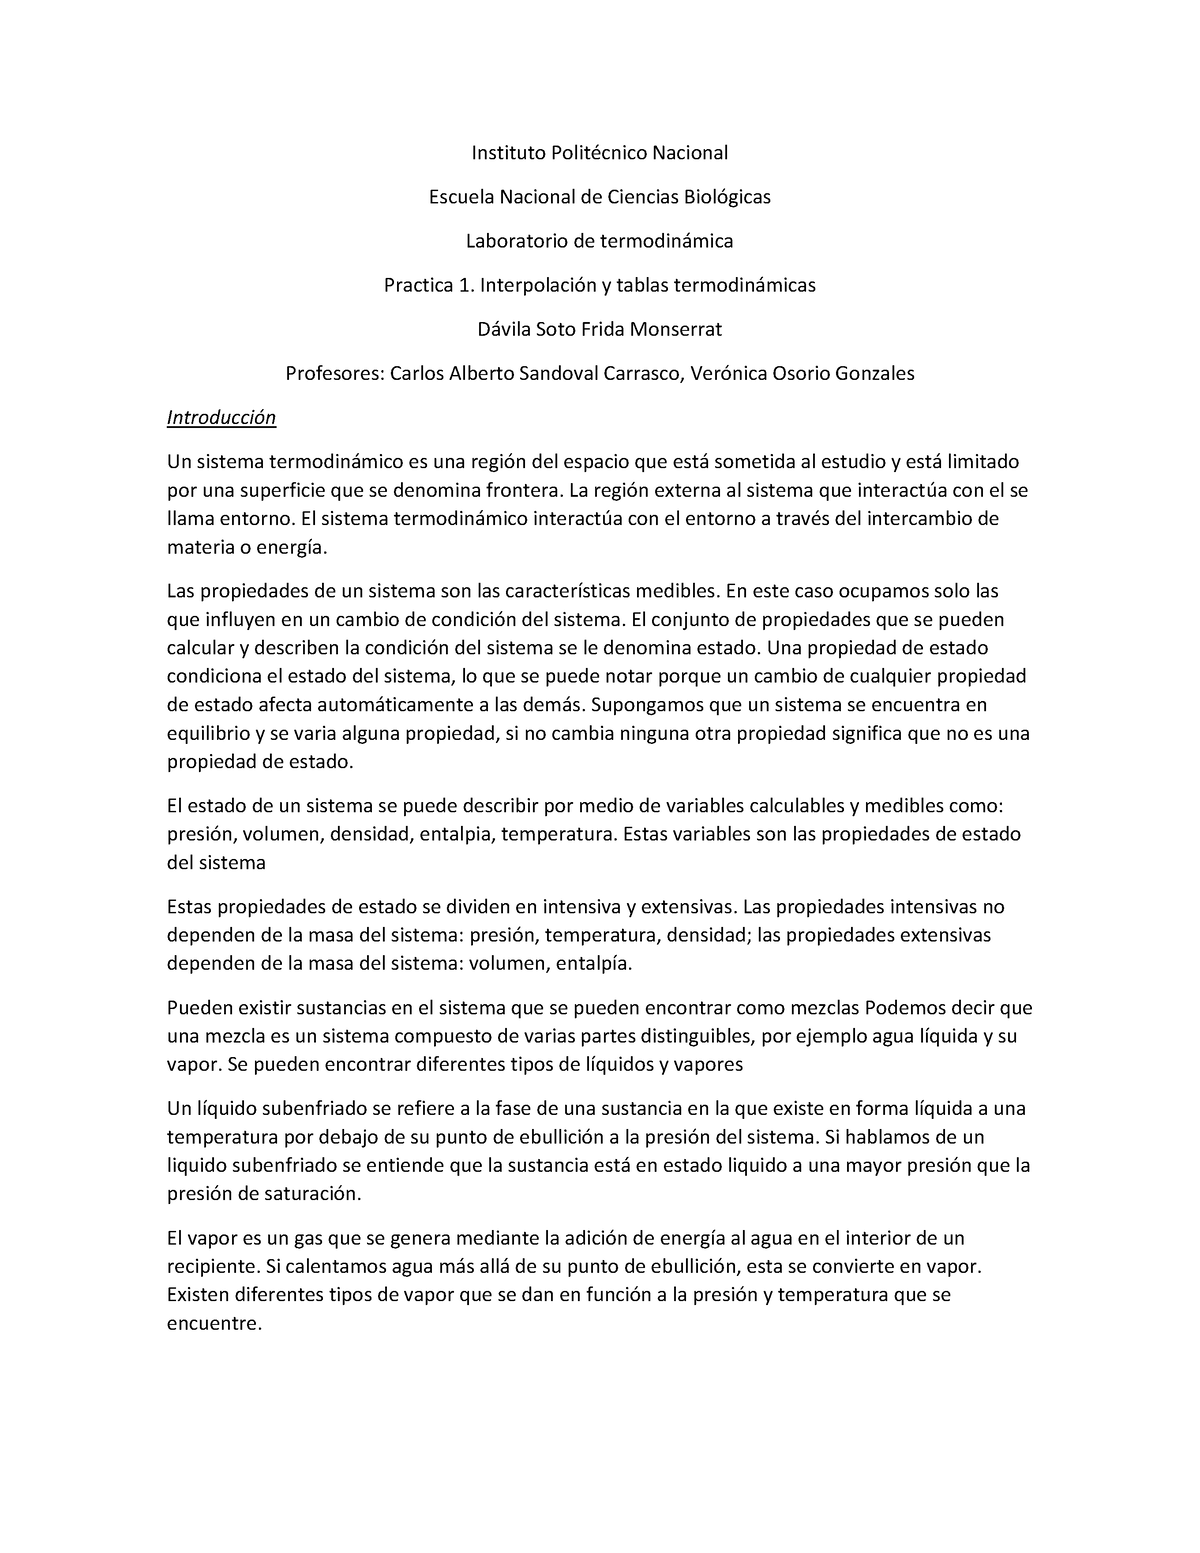 Interpolacion y tablas termodinamicas - Instituto PolitÈcnico Nacional ...